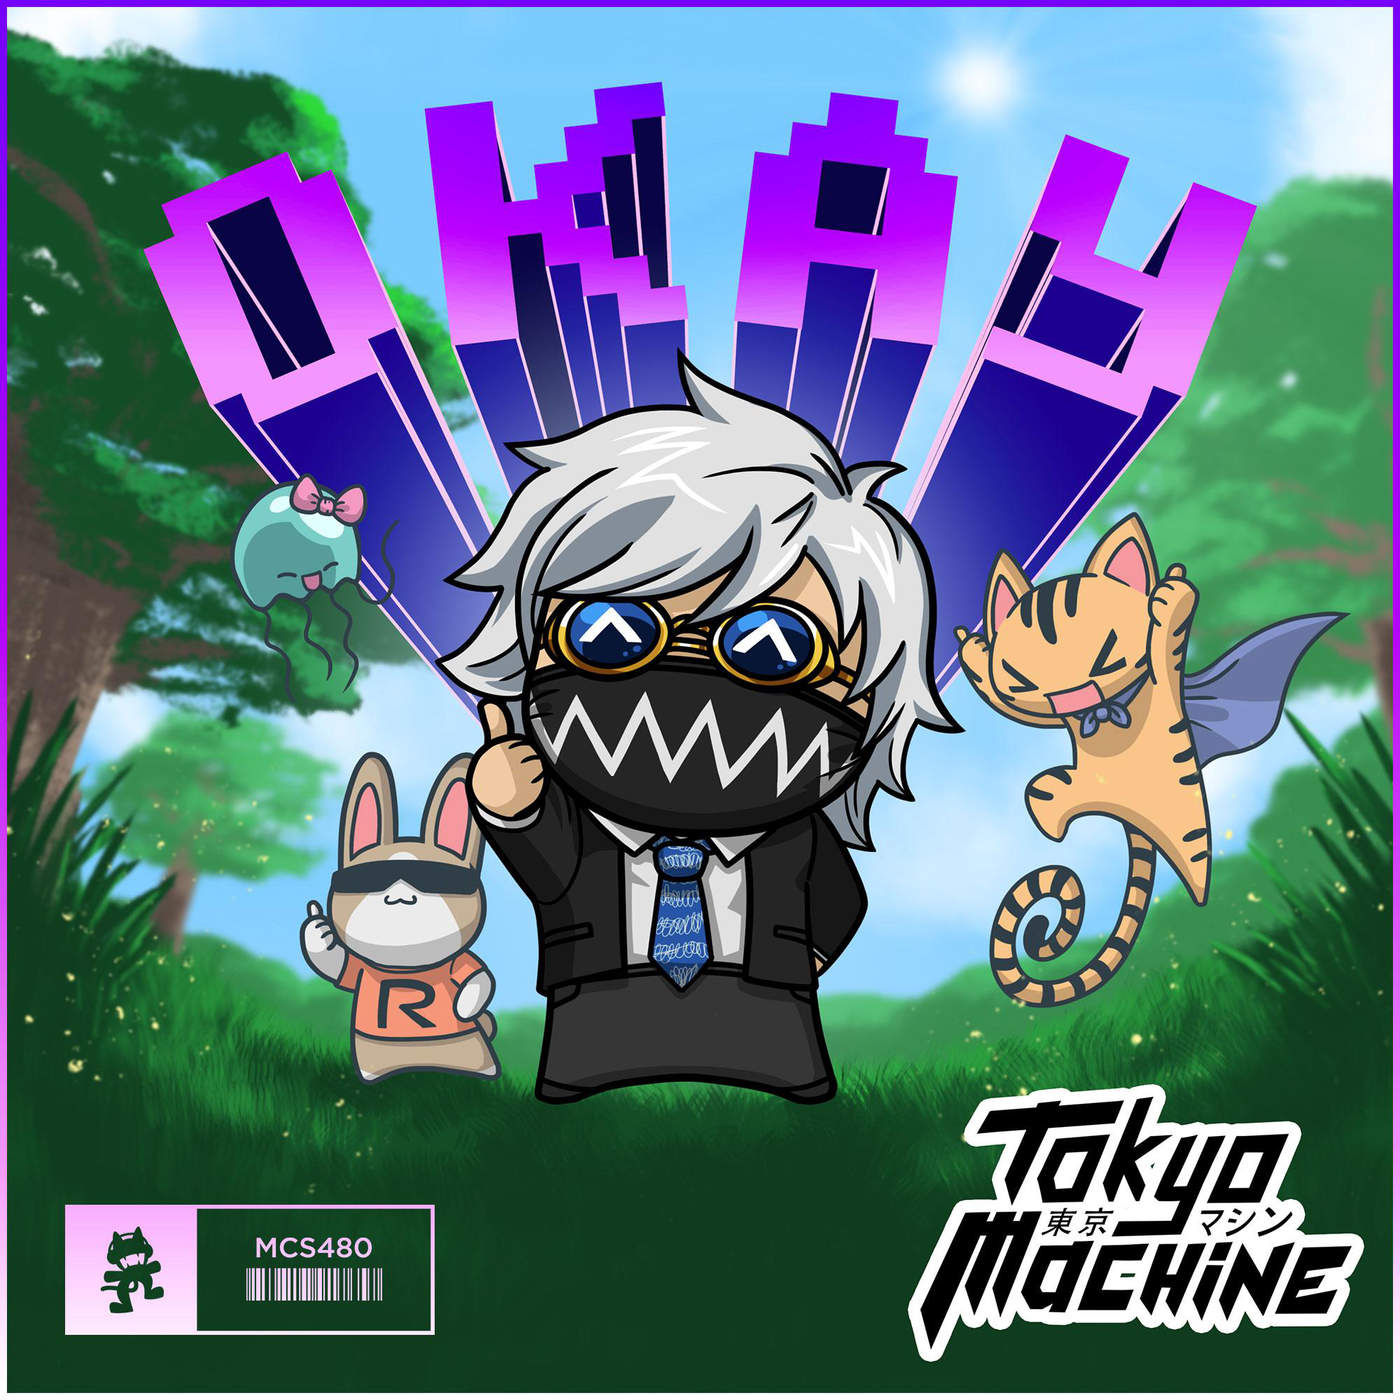 Tokyo Machine - OKAY [Monstercat Release] (격렬, 신남, 발랄, 비트, 8비트)